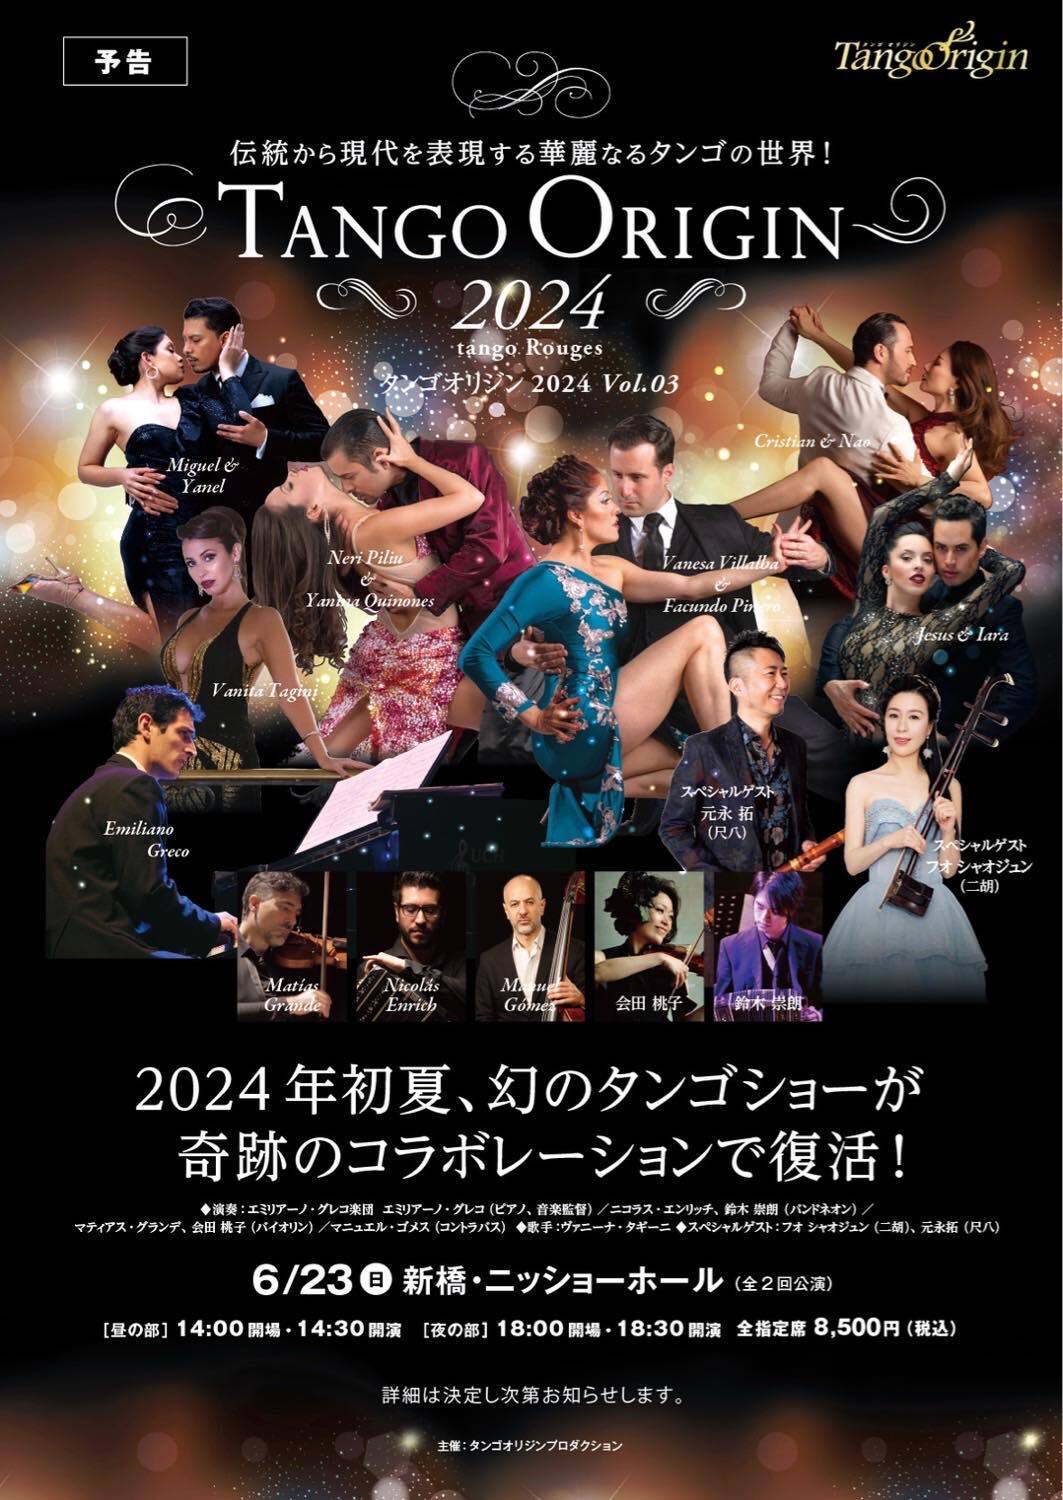 本場ブエノスアイレス、日本のトップ・アーティストが贈る
情愛と官能のアルゼンチンタンゴ、究極のステージ
「TANGO ORIGIN 2024-Tango Rouge」を全国7か所で開催